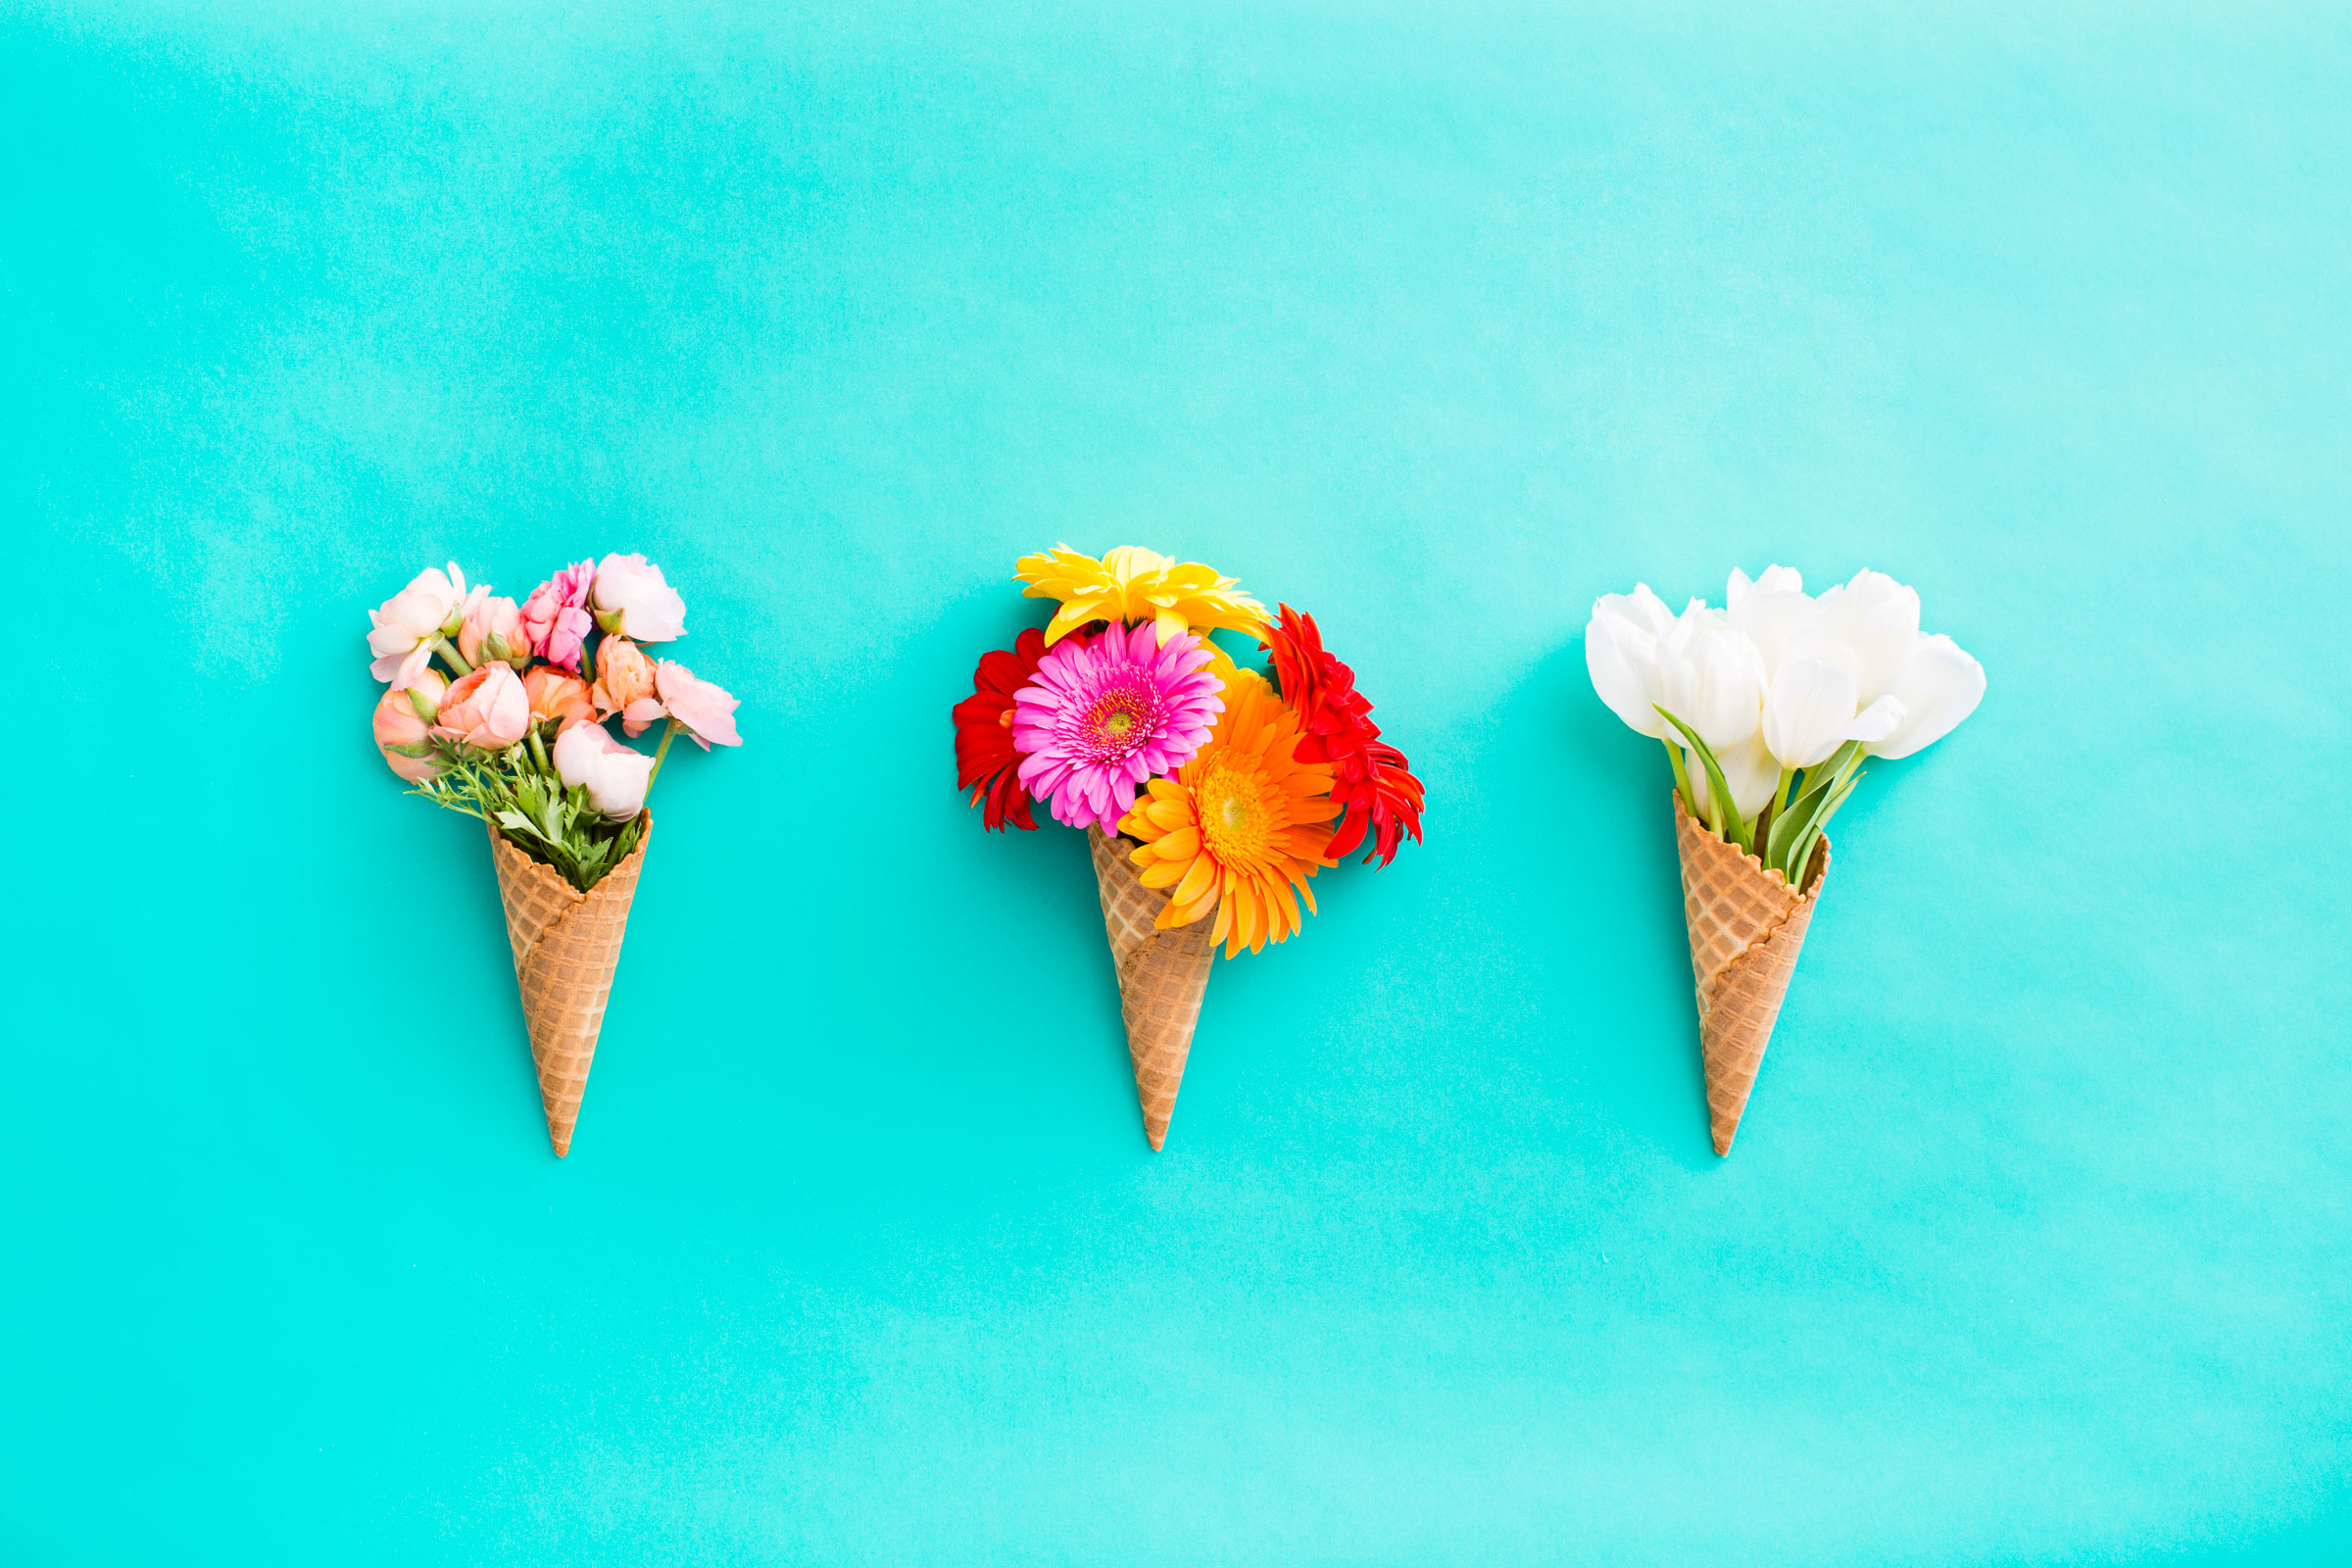 crema de papel tapiz de flores,cucurucho de helado,helado,postre,comida,helado